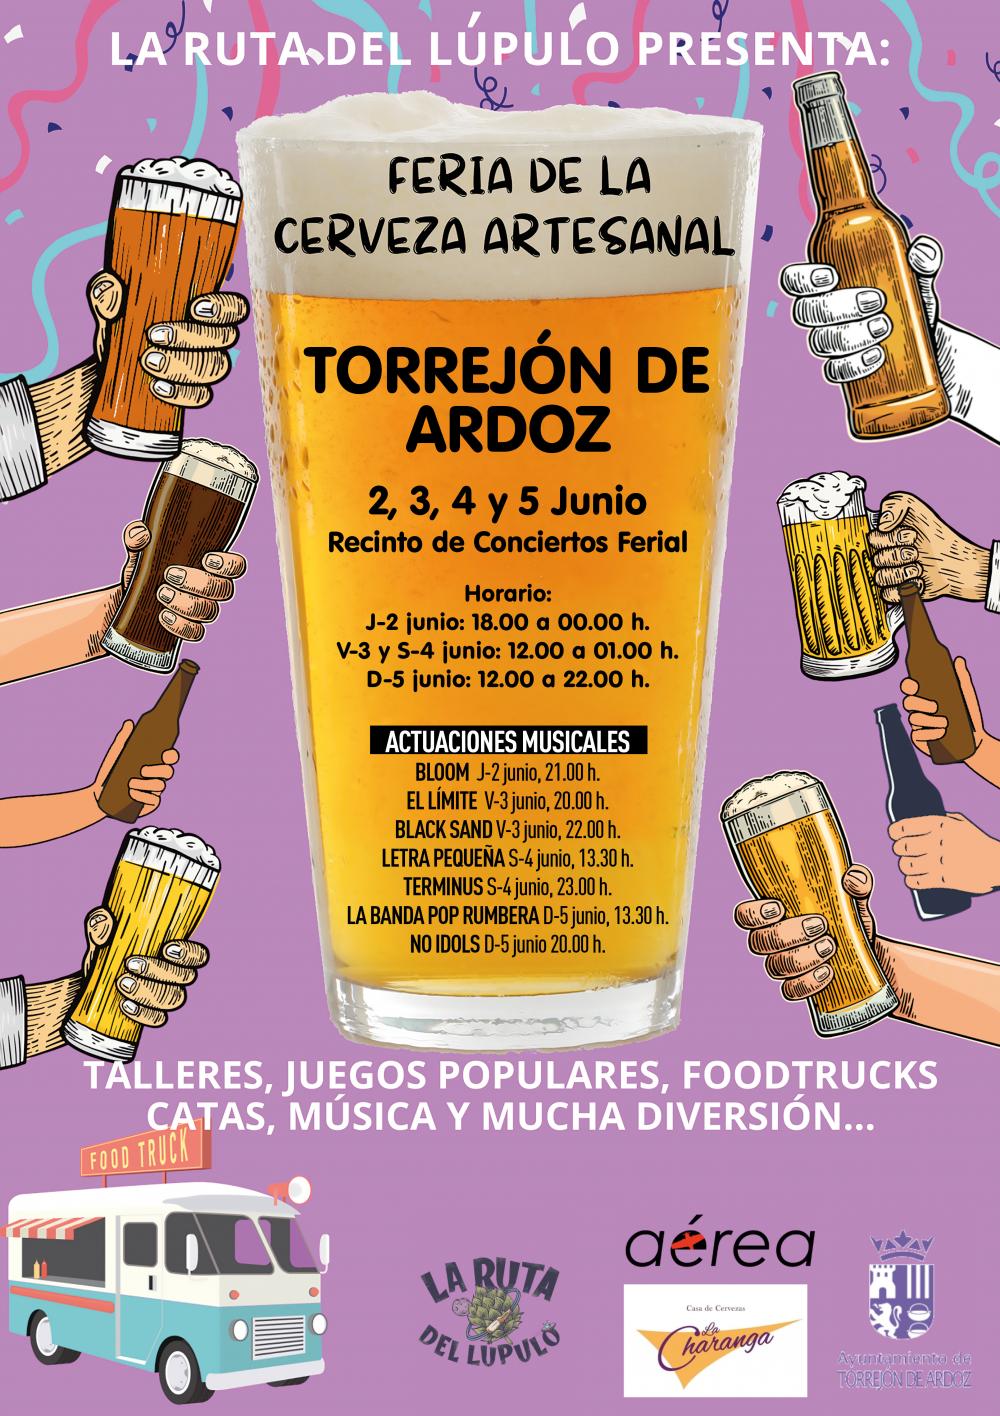 Cartel de la Feria de la Cerveza Artesanal en Torrejon